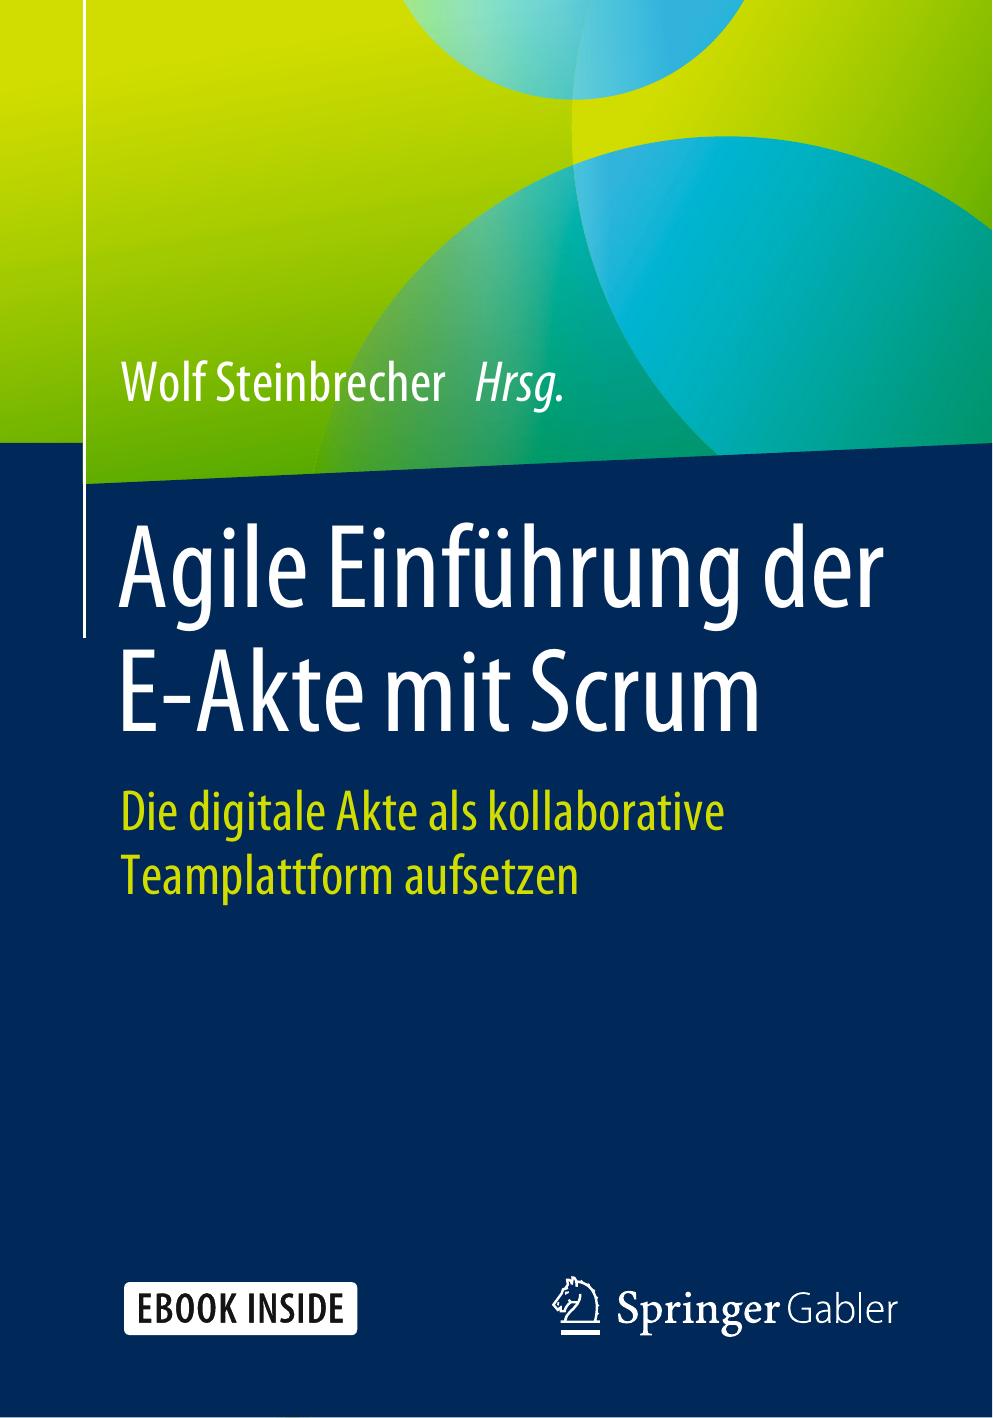 Agile Einführung der E-Akte mit Scrum: Die digitale Akte als kollaborative Teamplattform aufsetzen